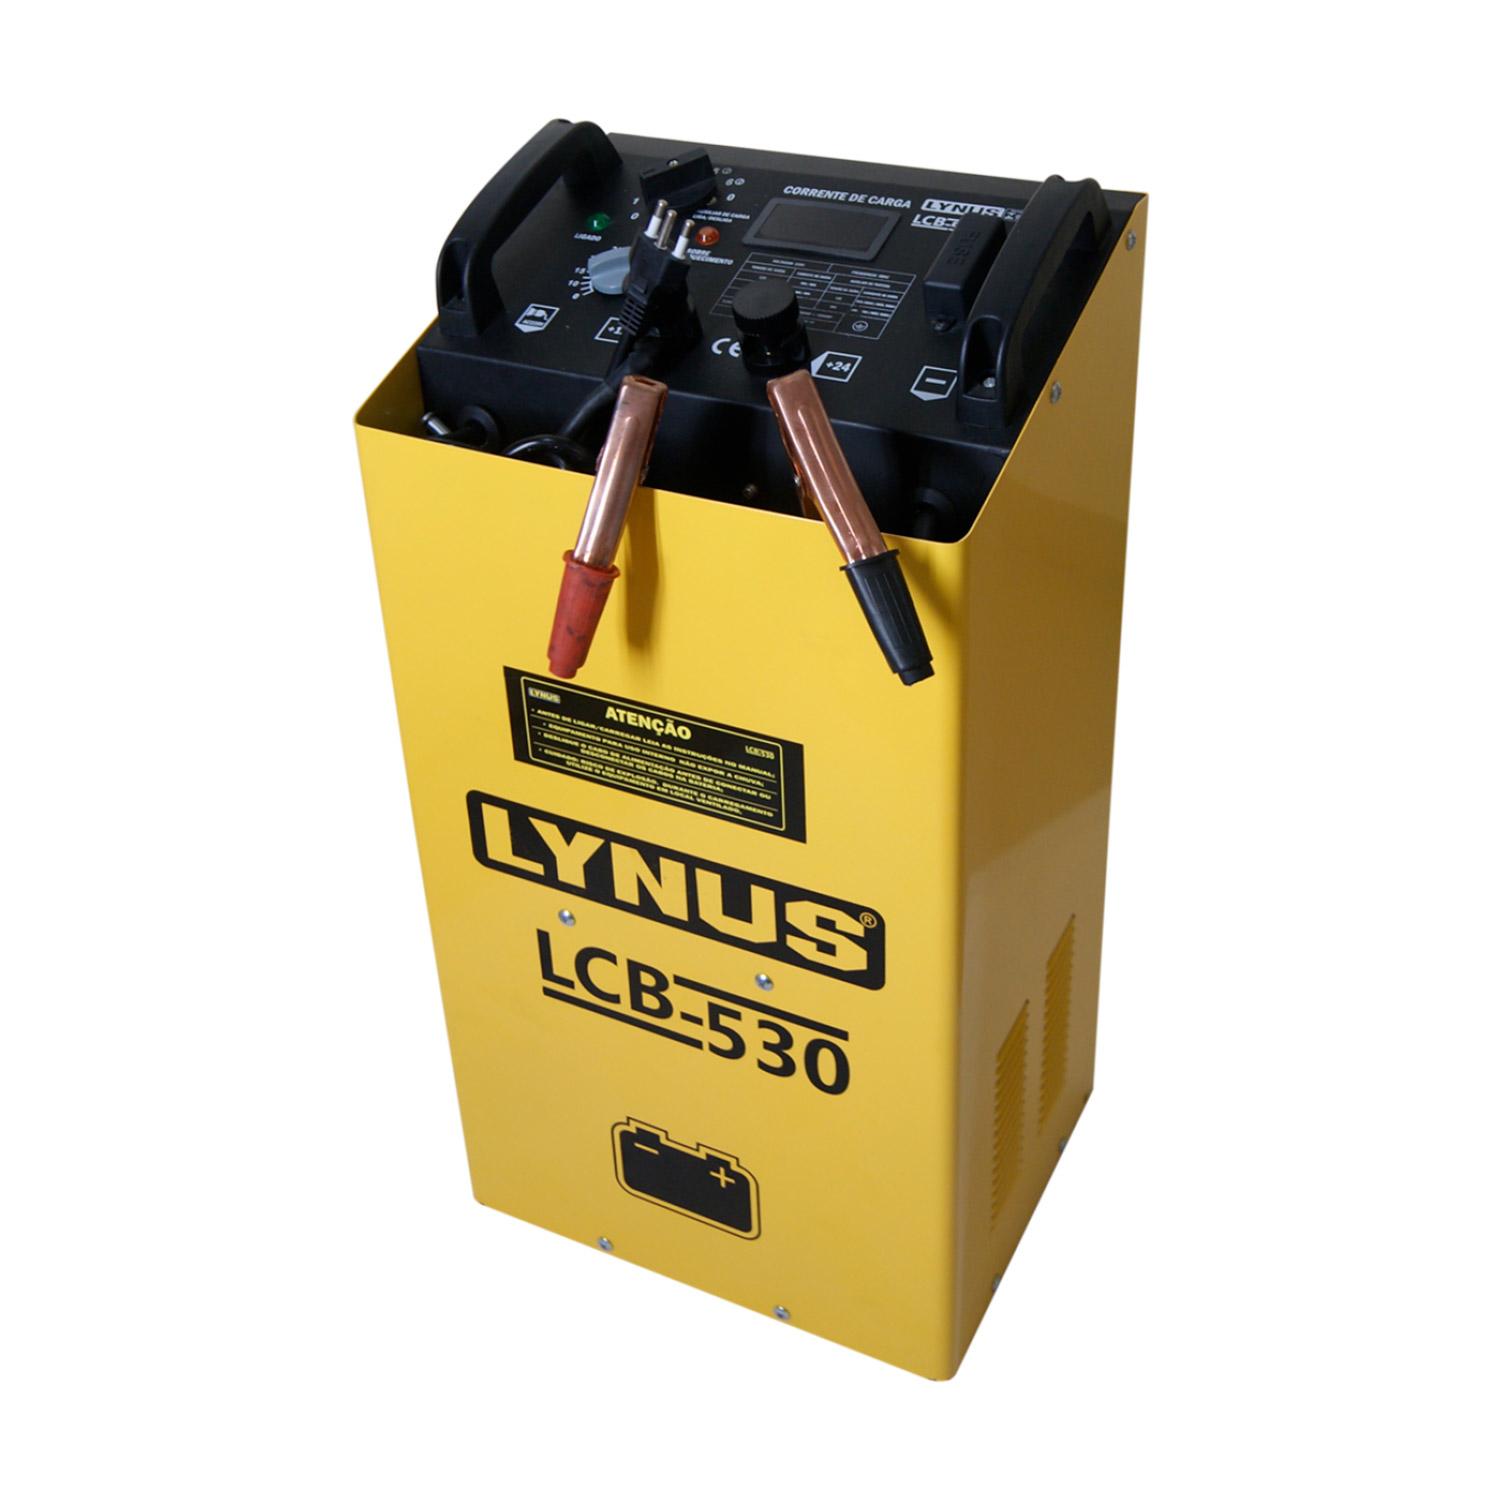 Carregador Bateria Lcb-530 Lynus 220 V